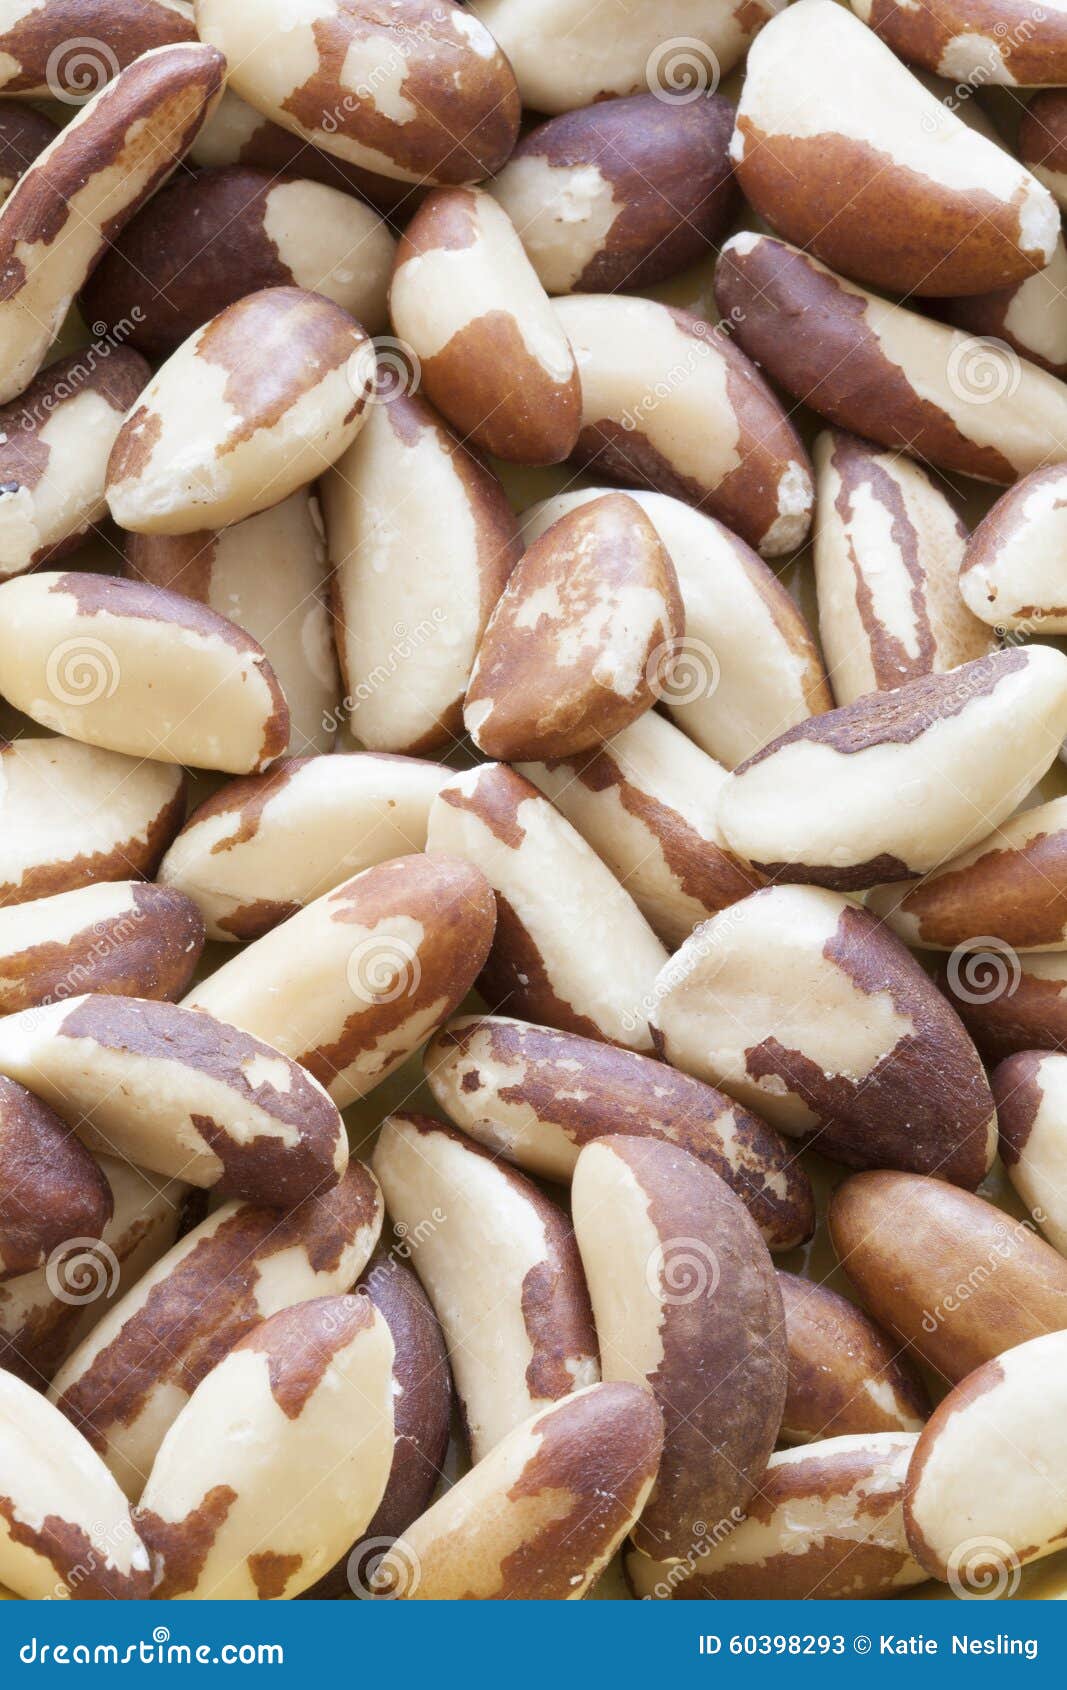 full frame shot of shelled brazil nuts